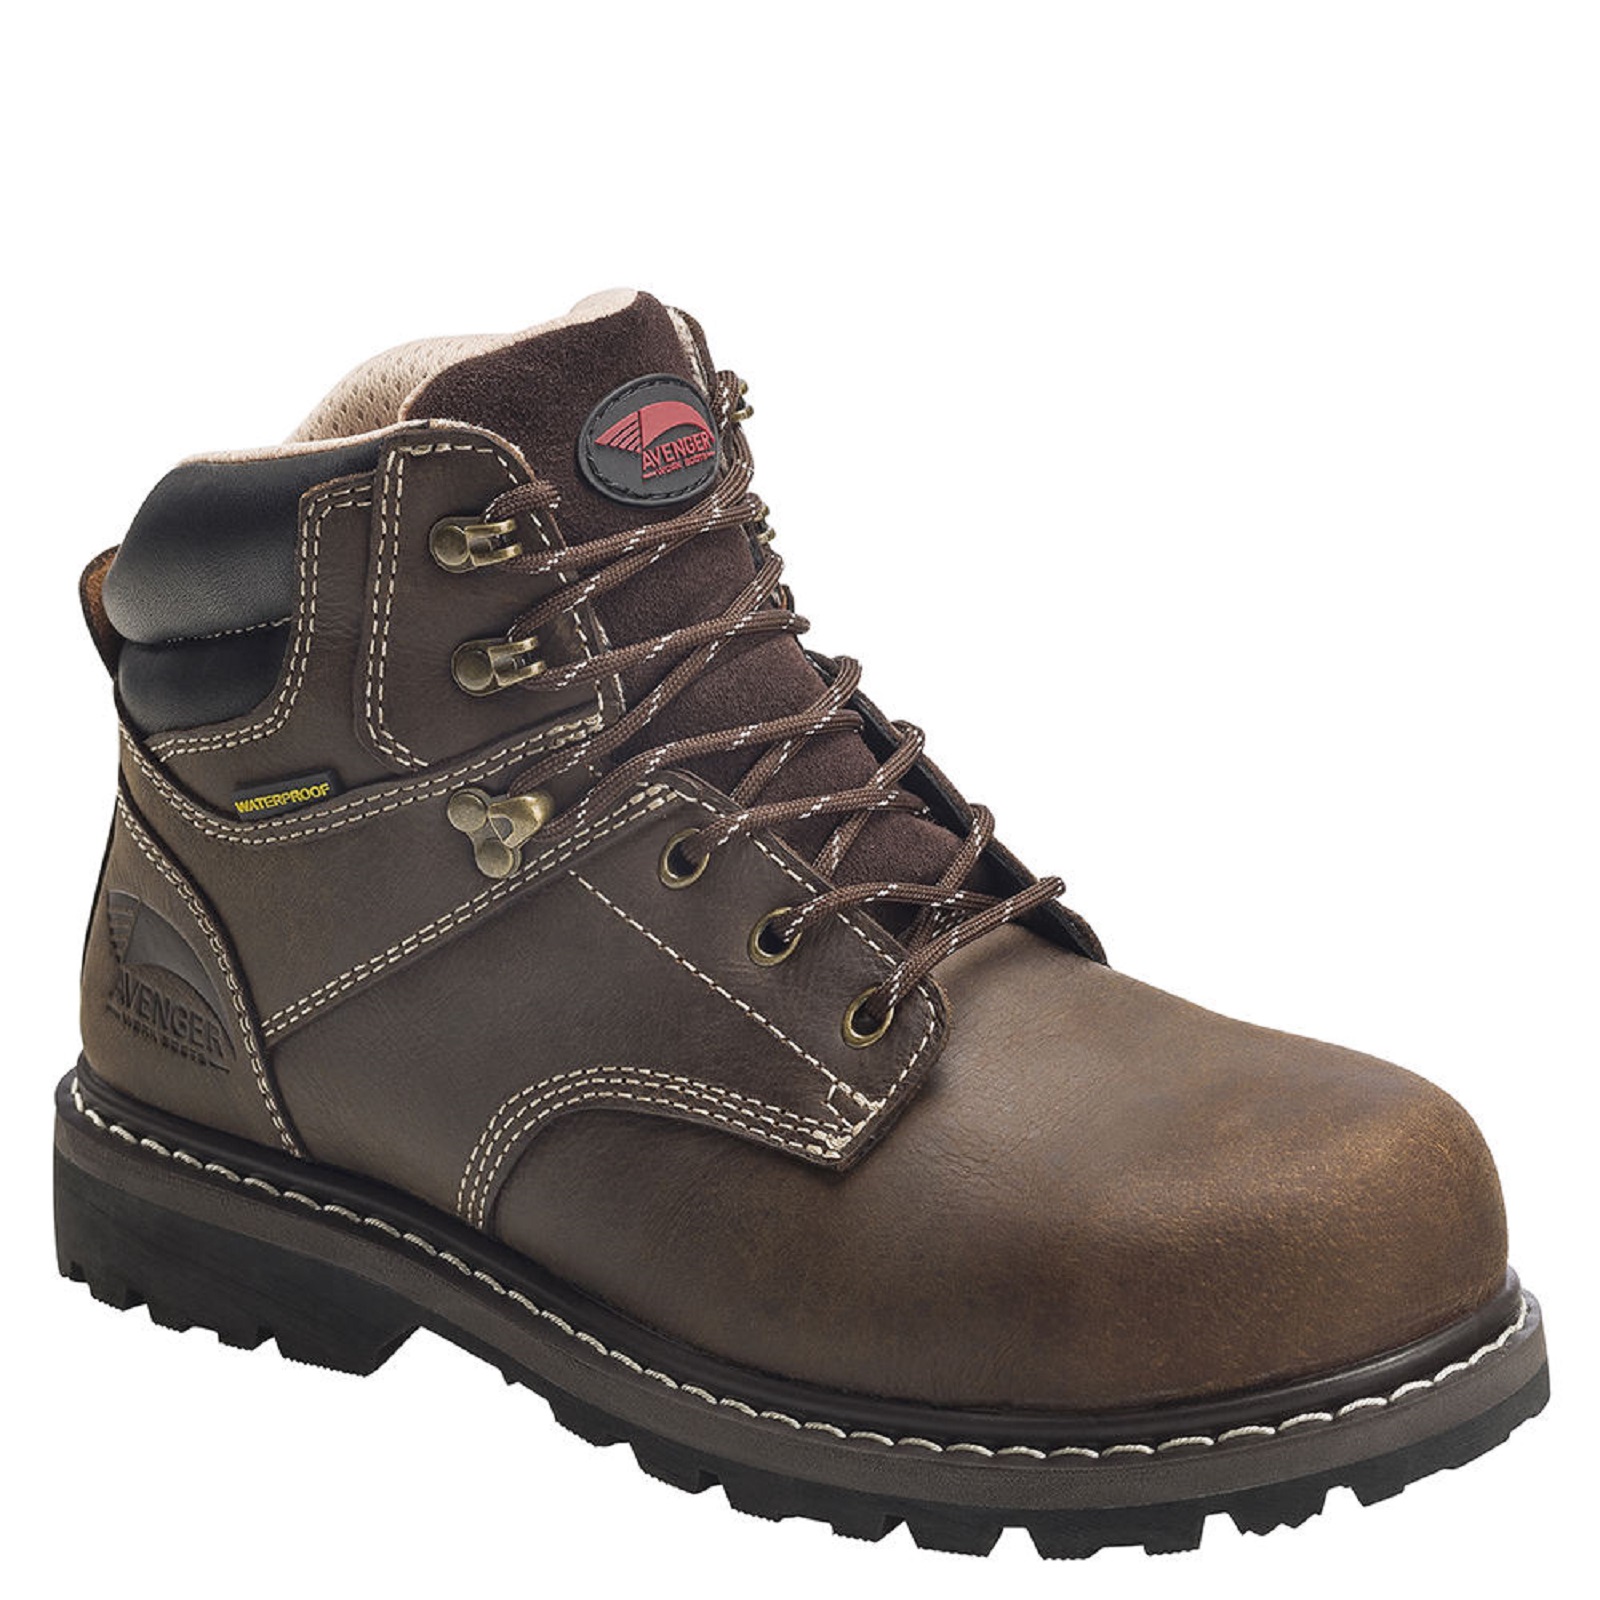 Avenger Safety Footwear Women's A7136 Brown Waterproof Steel Toe Work Boot